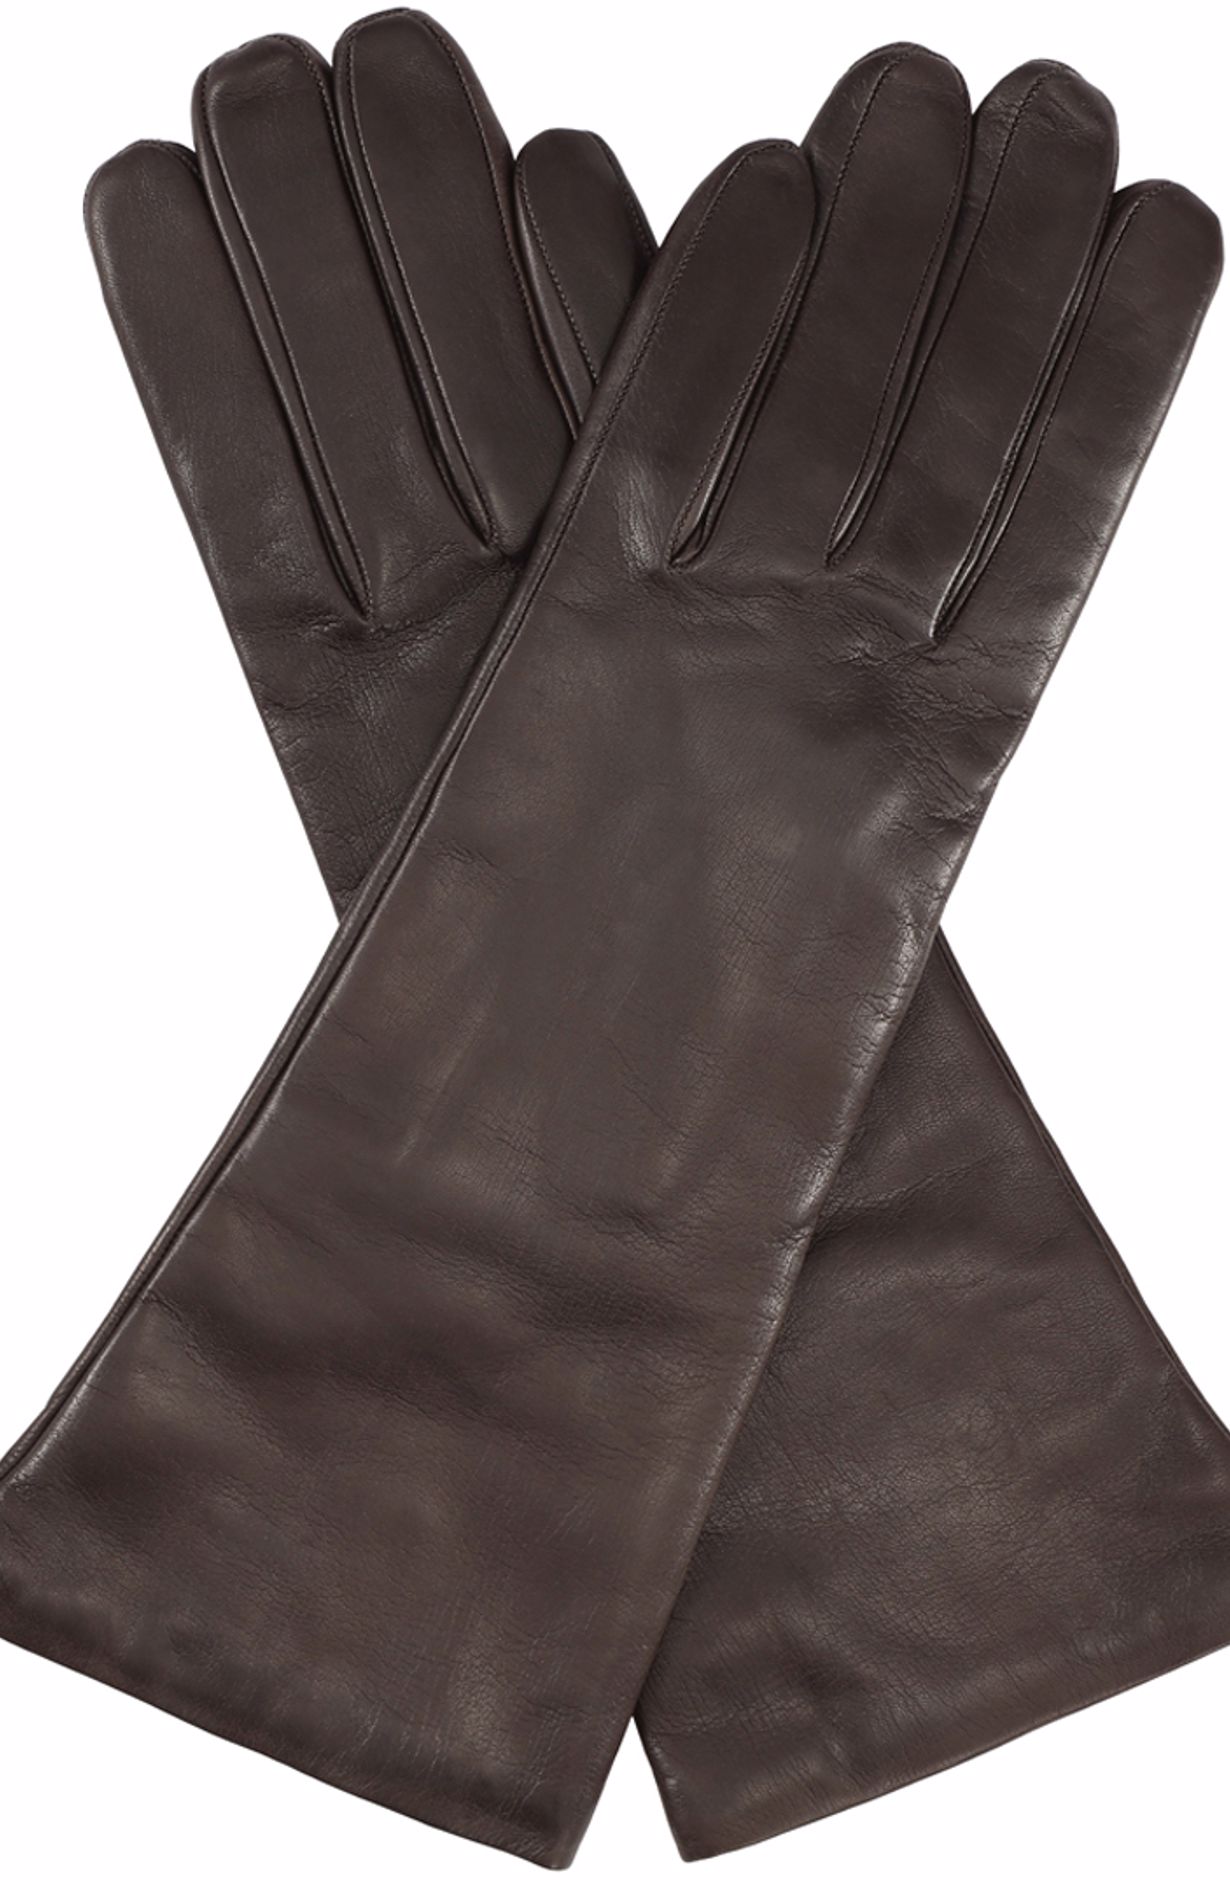 Skin Gloves - Brown